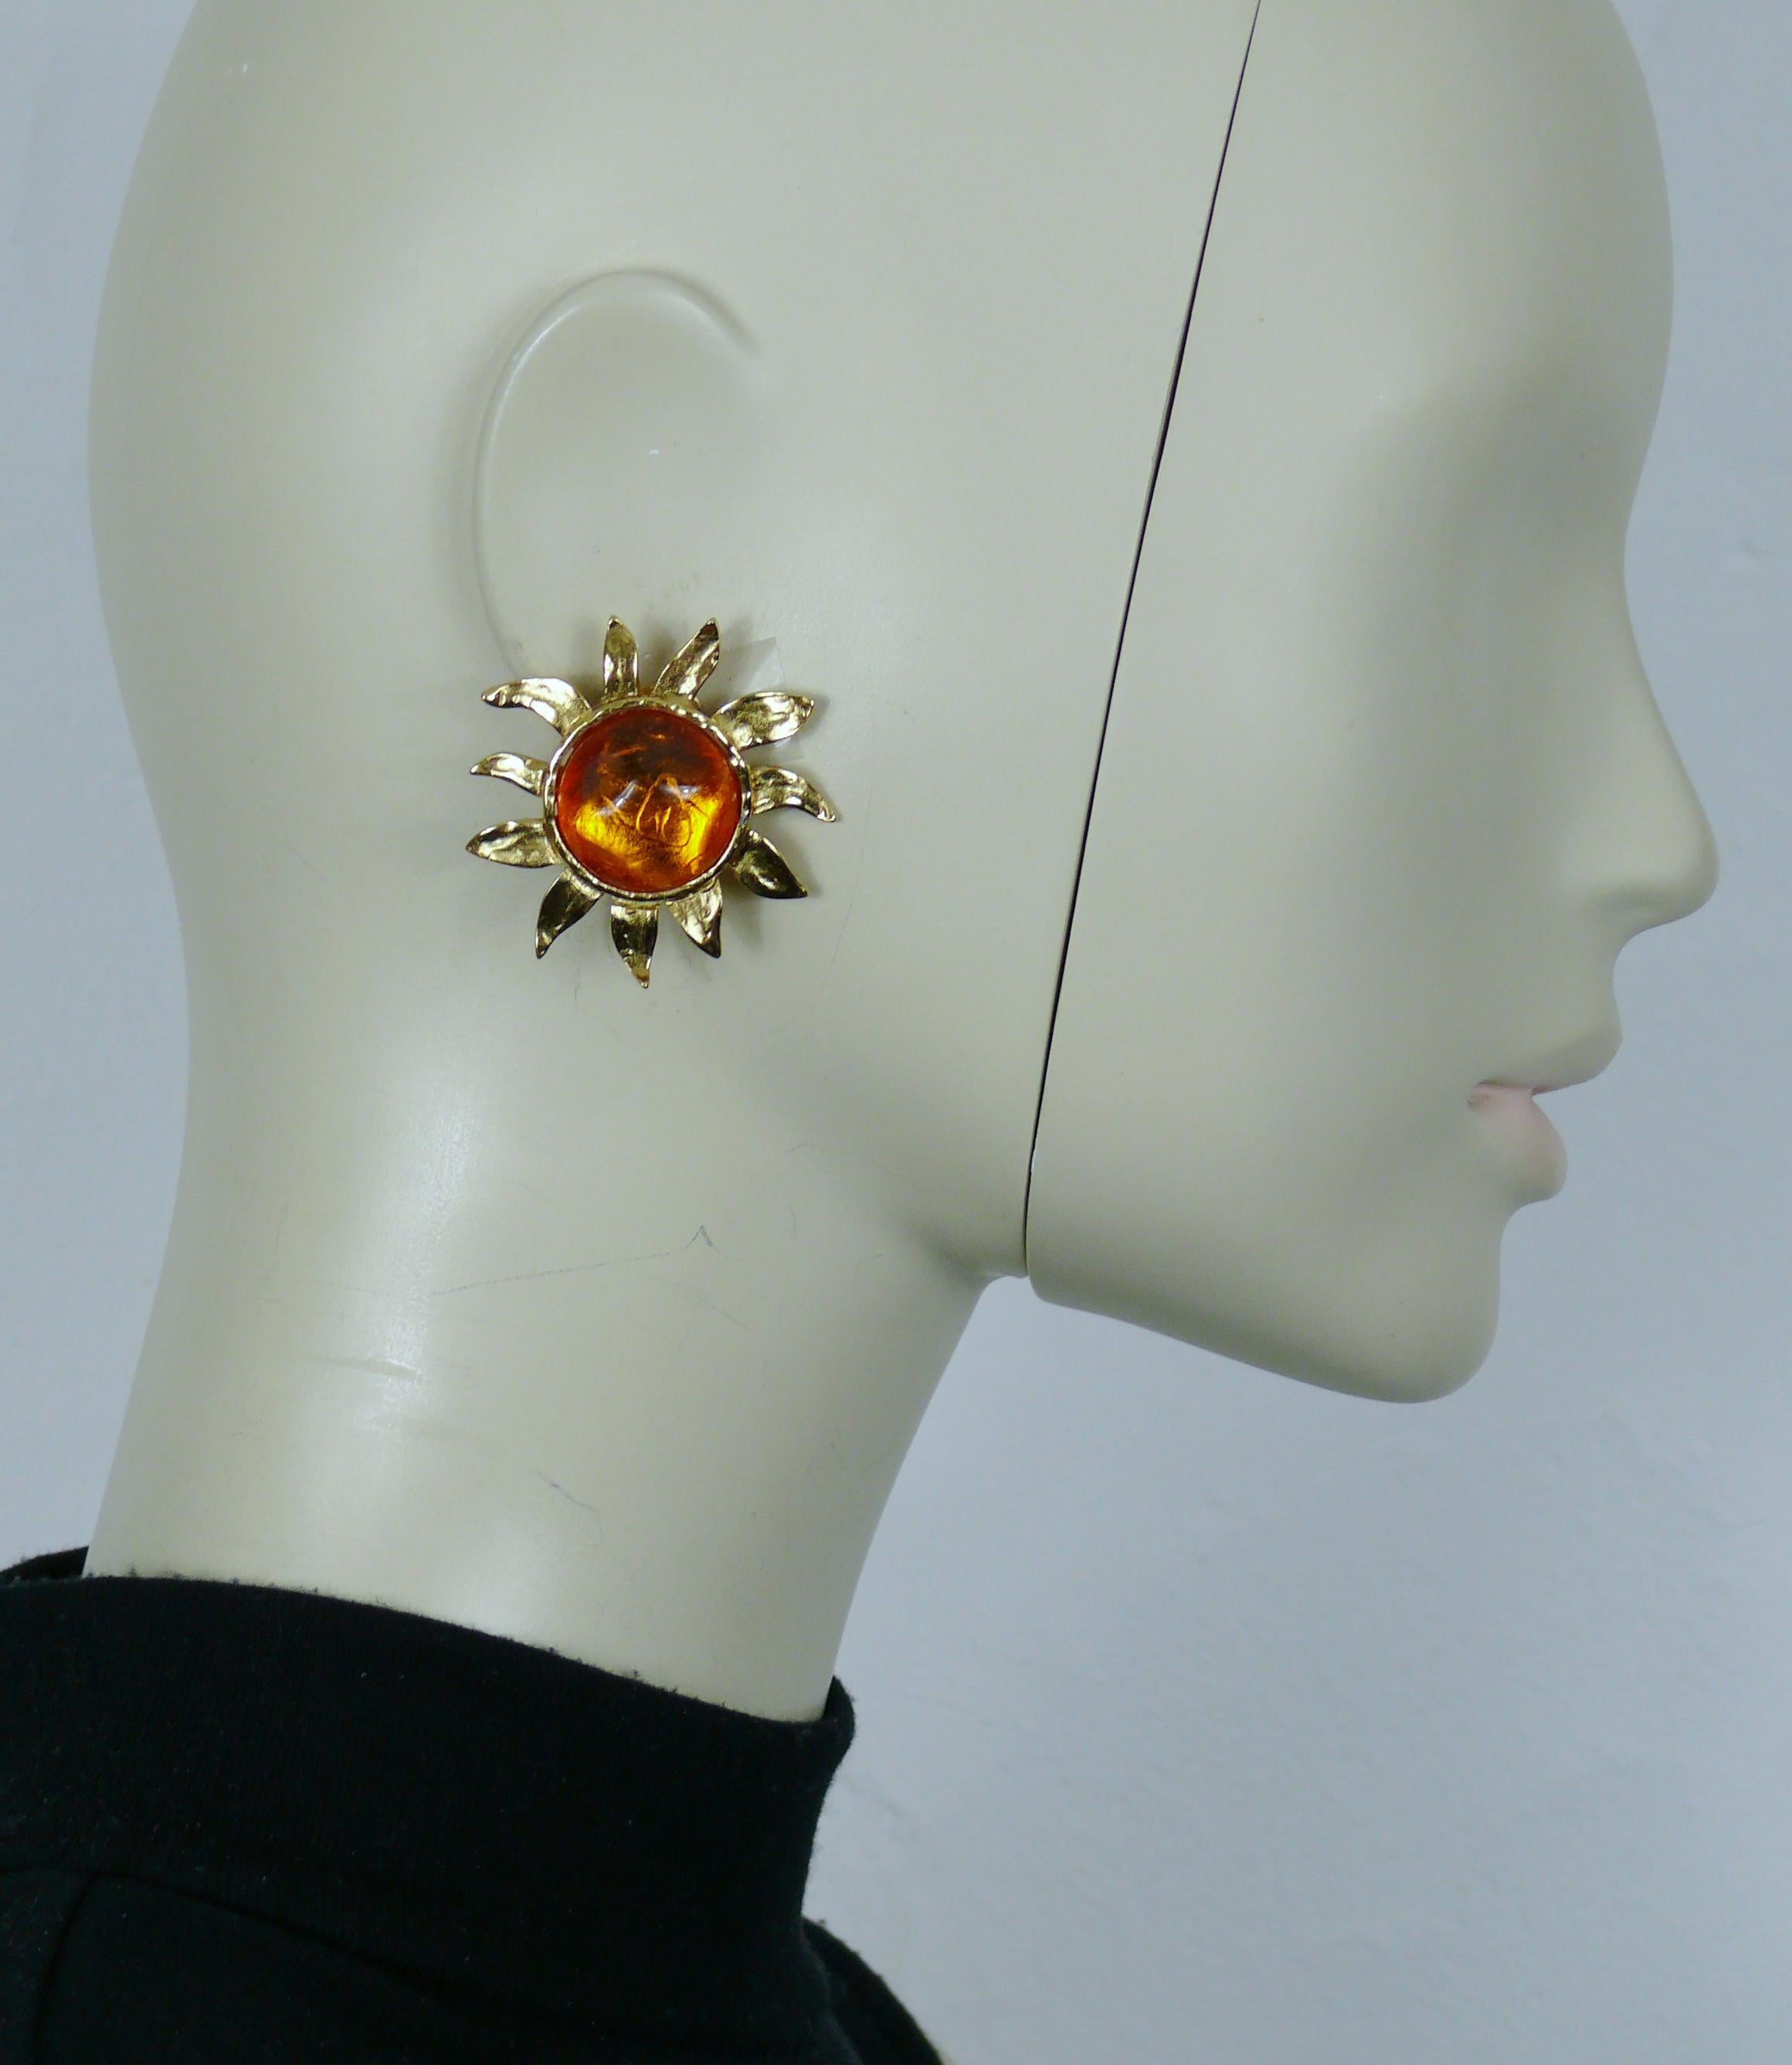 YVES SAINT LAURENT Vintage-Ohrringe mit Sonnenstruktur und einem unregelmäßig geformten orangefarbenen Harz-Cabochon in der Mitte.

Geprägtes YSL.

Ungefähre Maße: max. Höhe ca. 4,3 cm (1,69 Zoll) / max. Breite ca. 4,1 cm (1,61 Zoll).

Gewicht pro